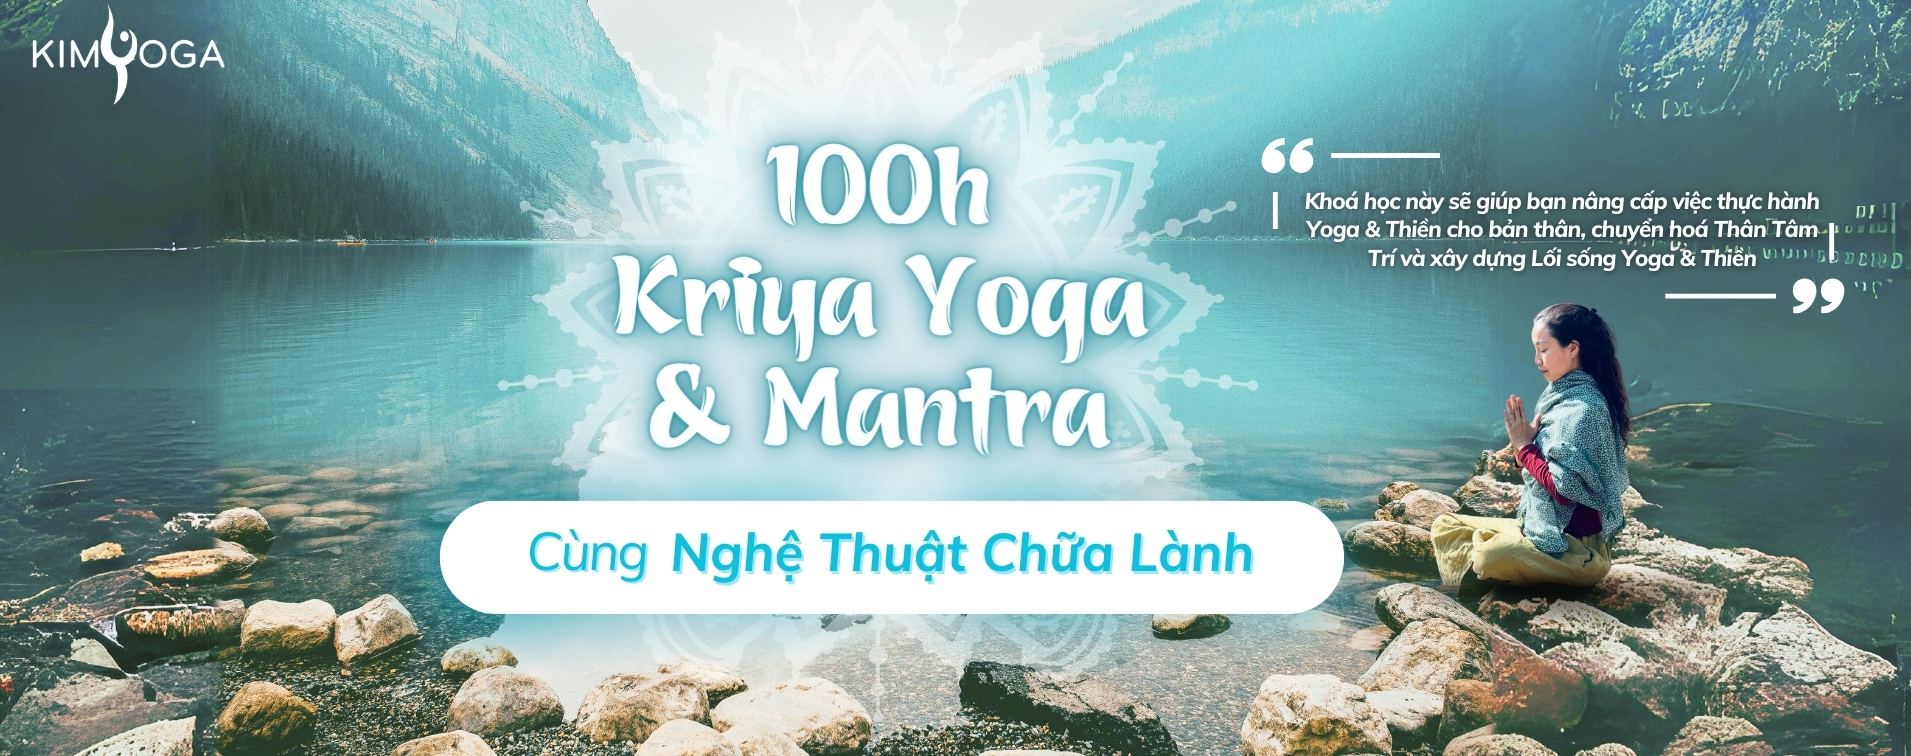 100h kriya yoga va mantra kimyoga banner